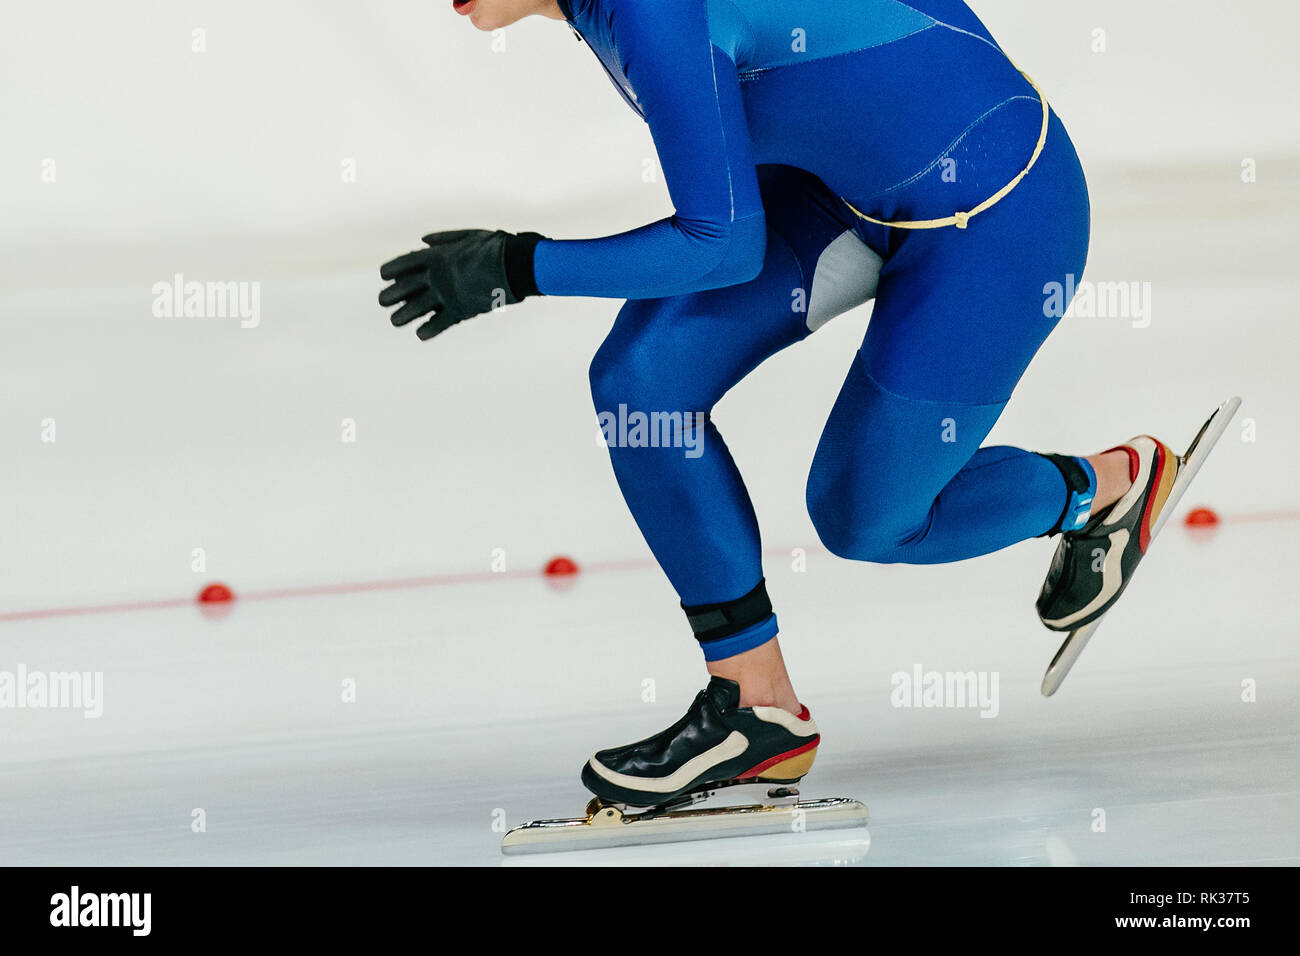 Le patineur de vitesse de l'athlète en fonction de la peau bleue d'exécution sur le patinage de vitesse Banque D'Images